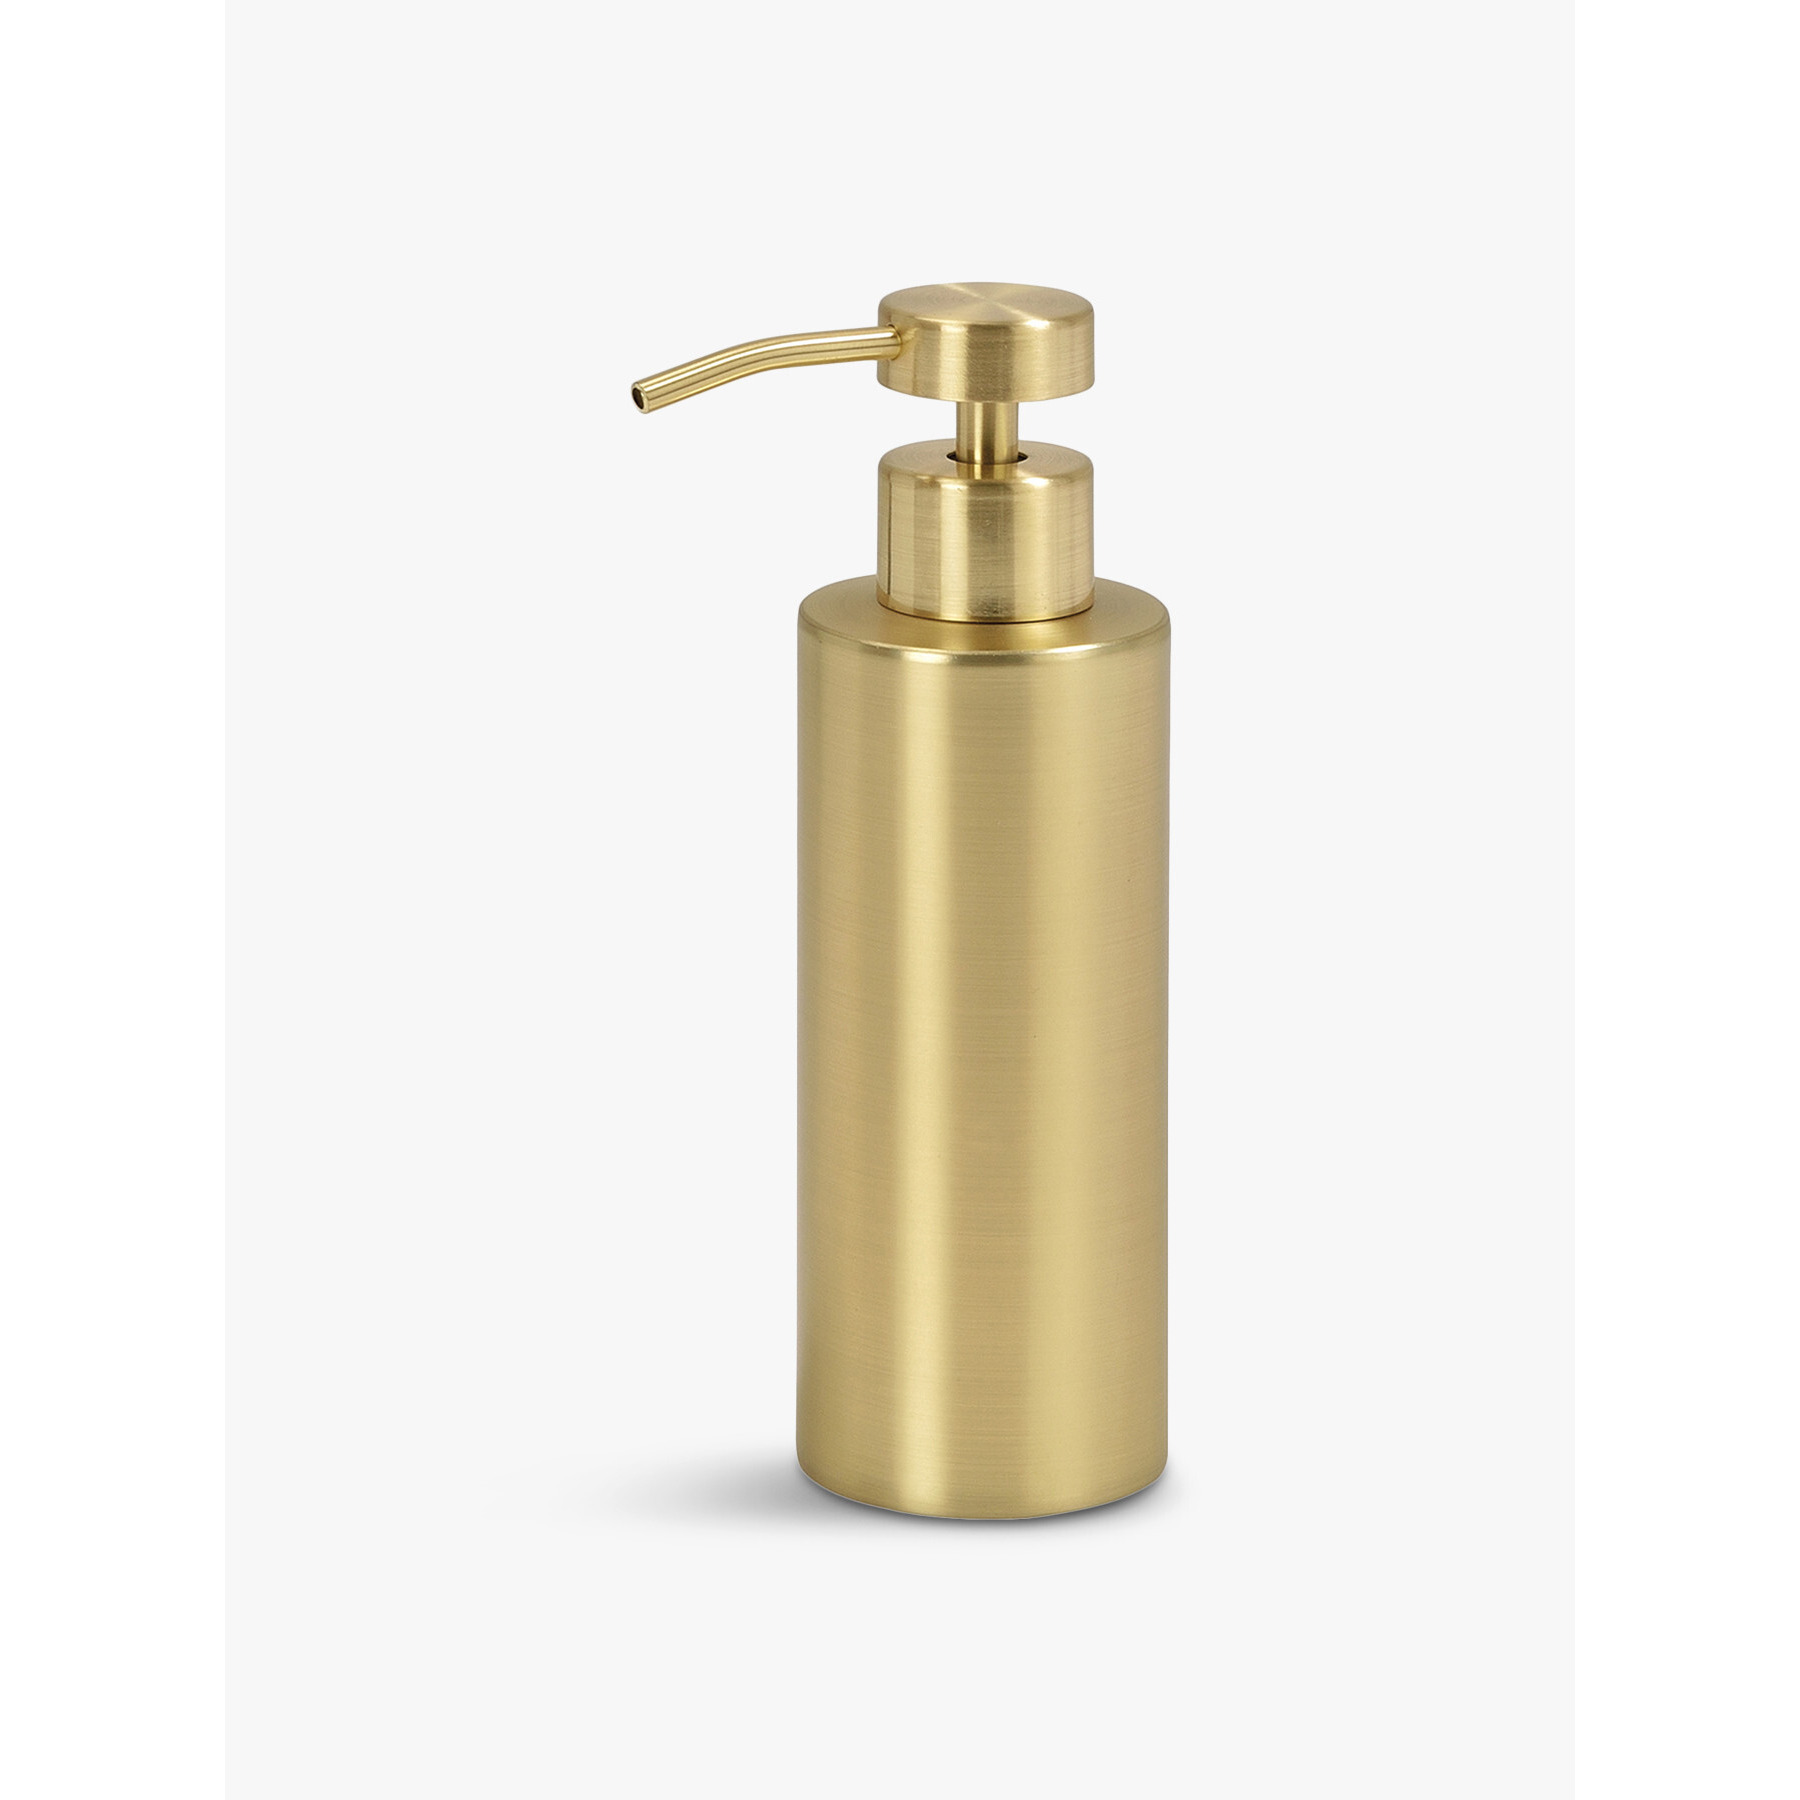 Andrea House Brass Soap Dispenser Gold - image 1